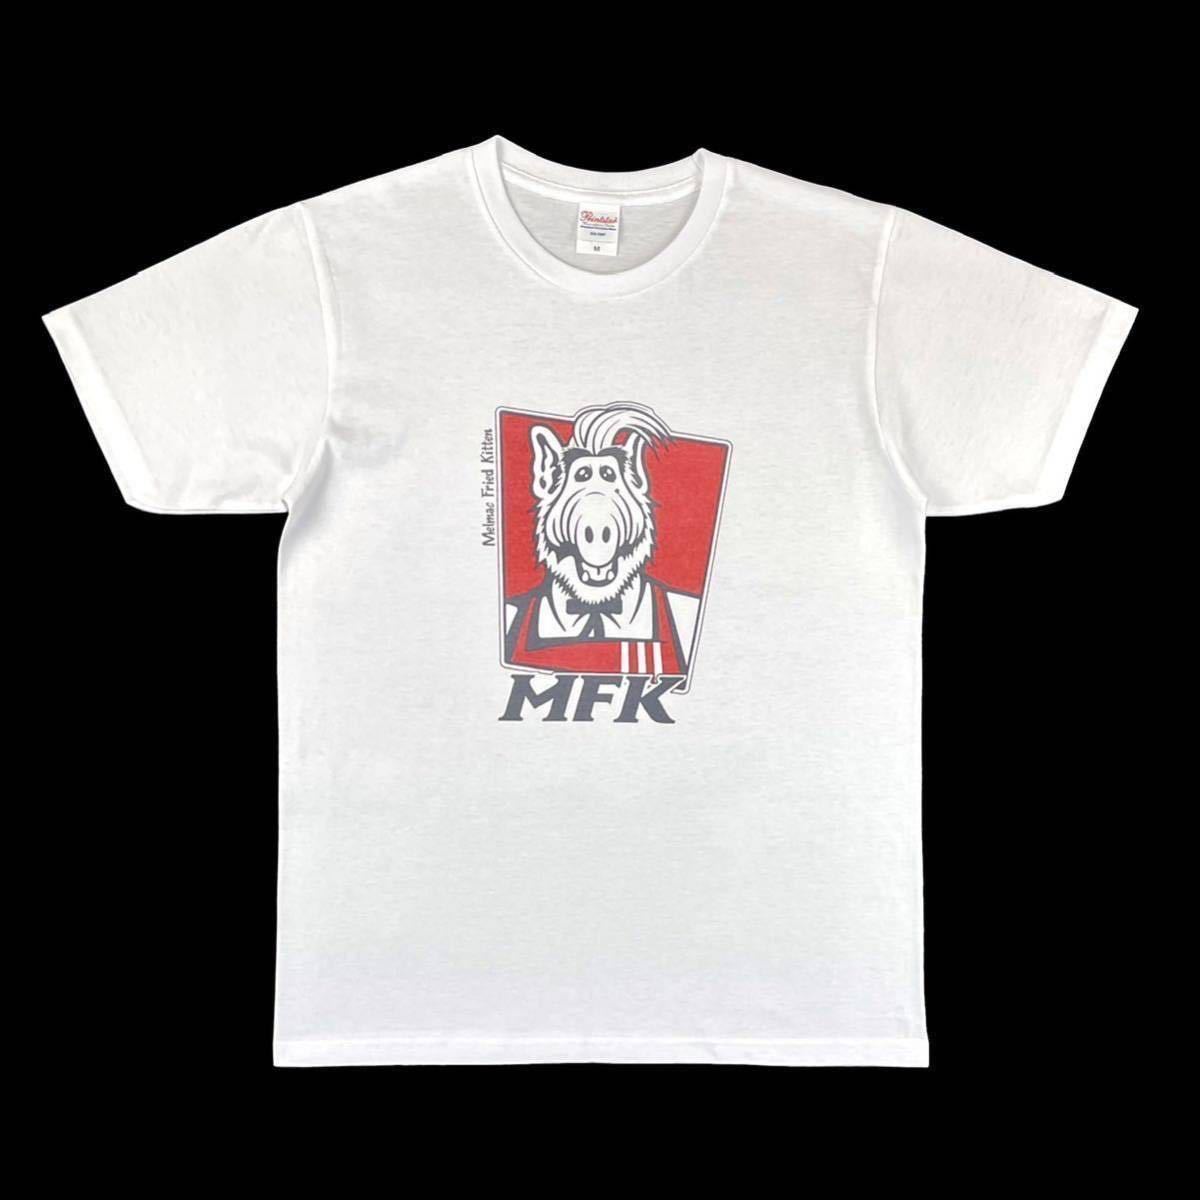 新品 ALF アルフ メルマック星 宇宙人 KFC ケンタッキー フライドチキン カーネル サンダース おじさん Tシャツ オーバー サイズ 白 XL(LL)